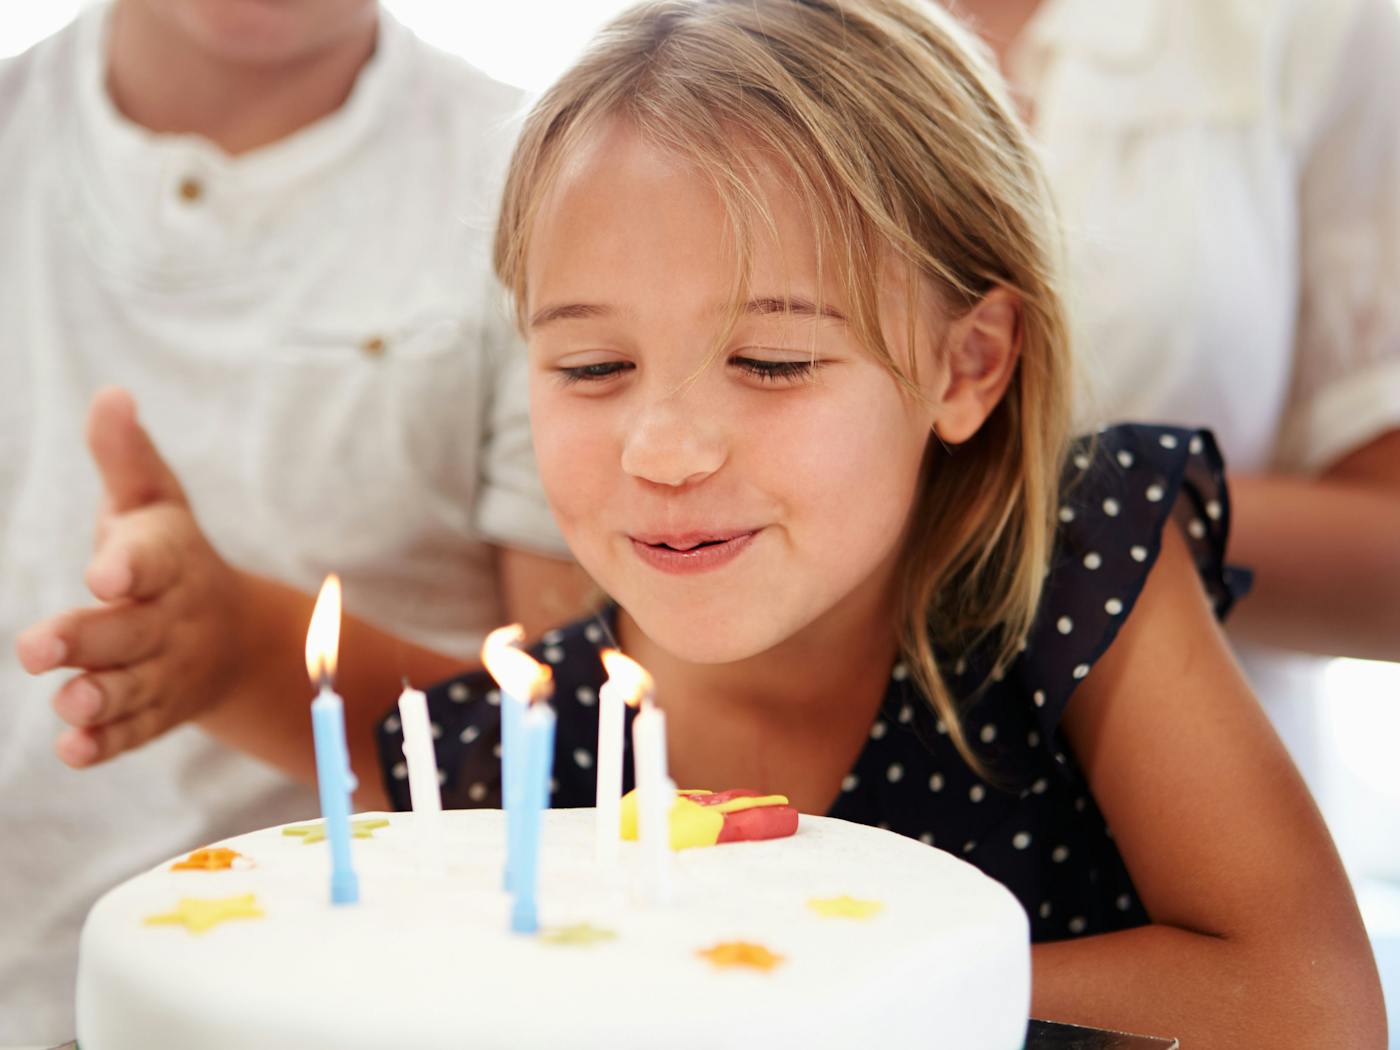 Arten von Geburtstagseinladungen